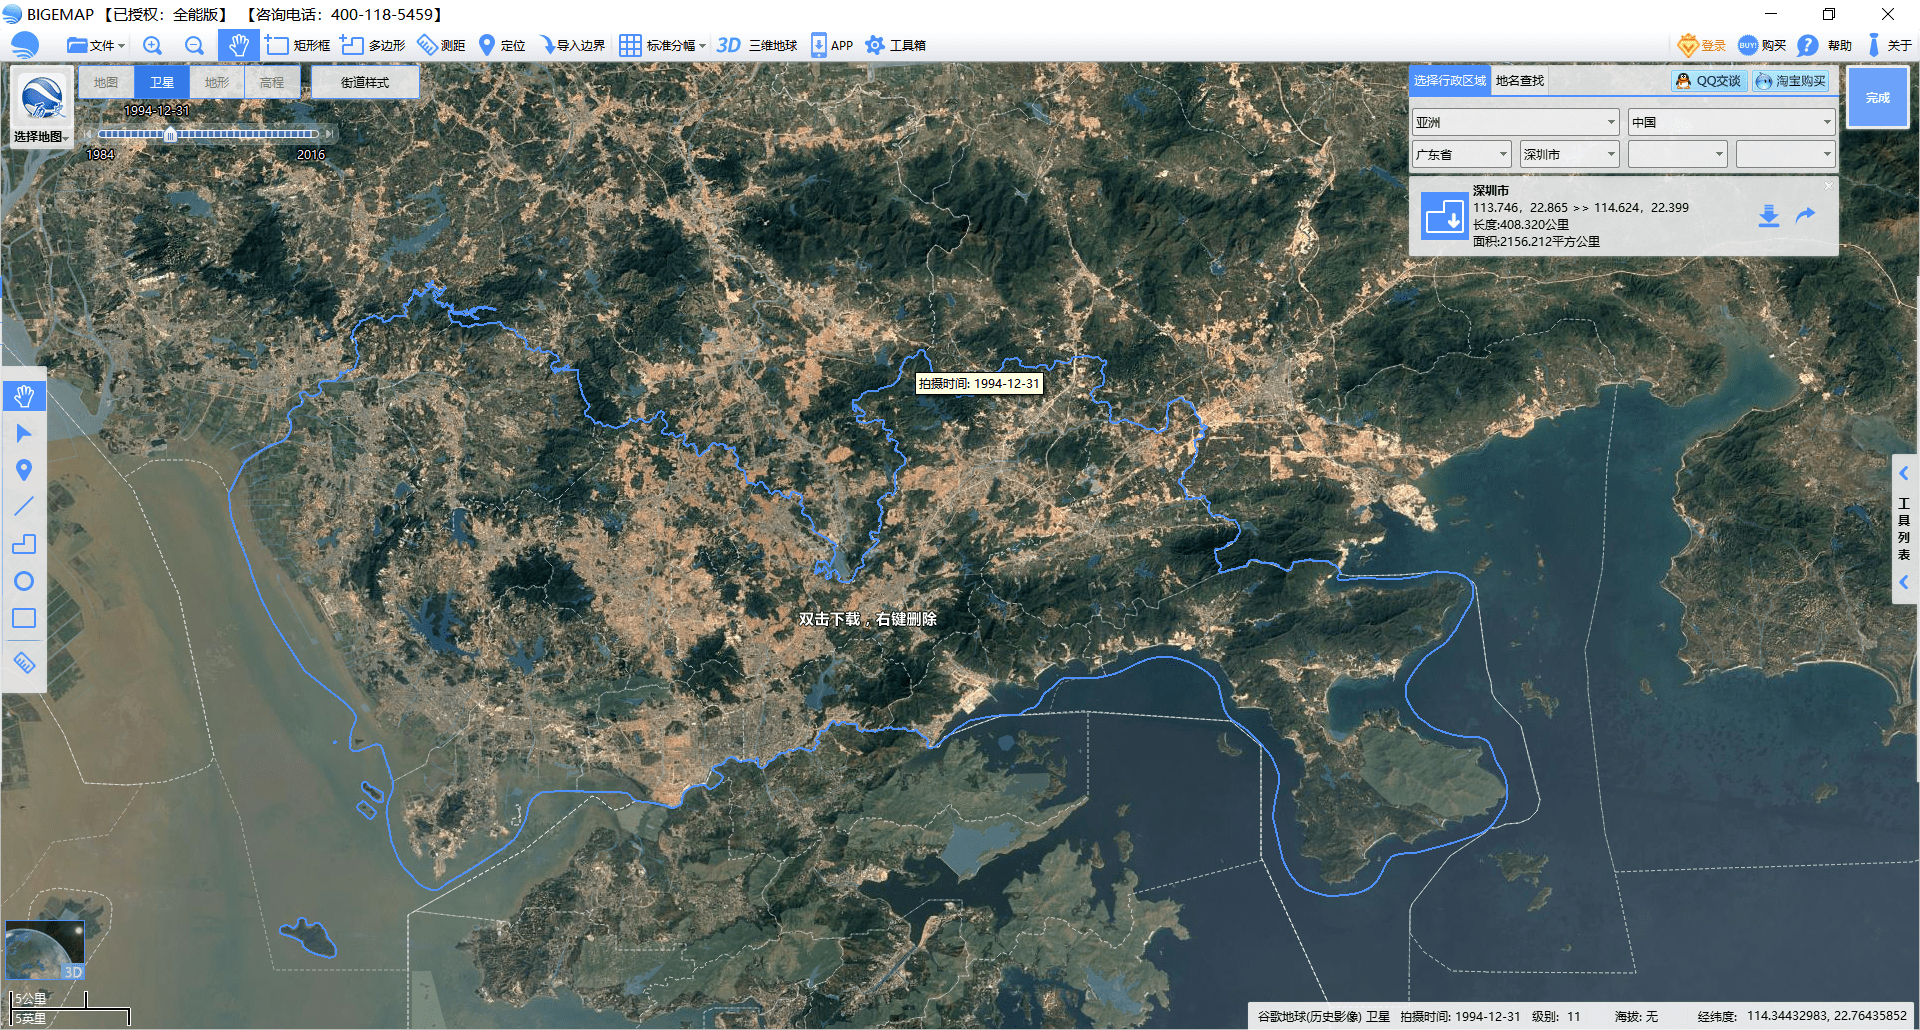 从卫星地图看深圳四十年的变化!从小渔村到大都市